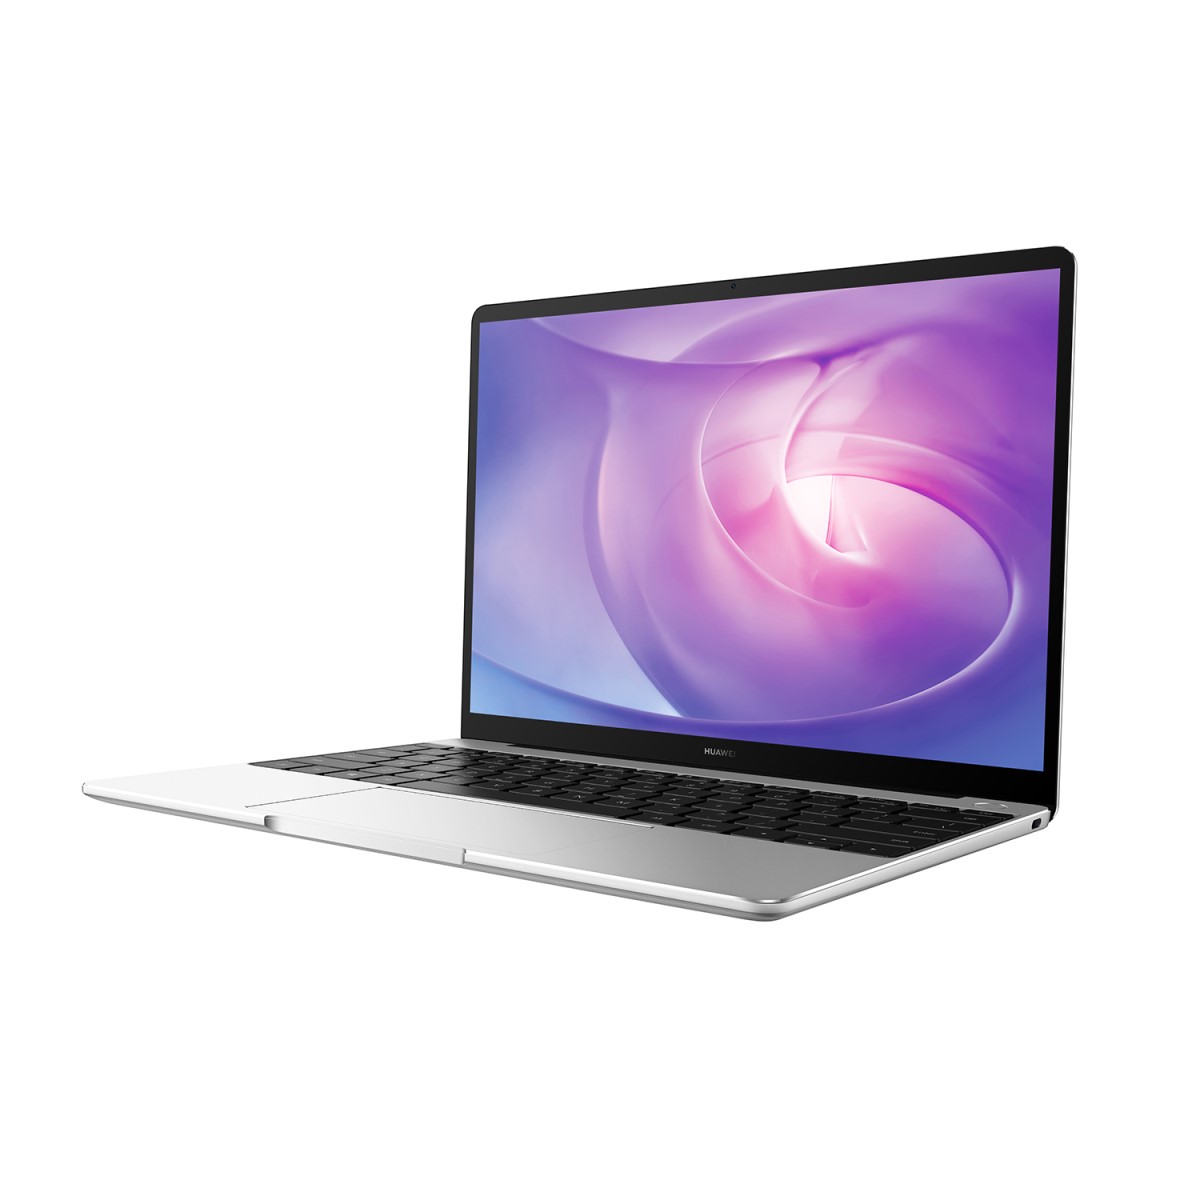 https://gadget.ro/wp-content/uploads/2020/05/Huawei-MateBook-13-Intel-Edition-1.jpg